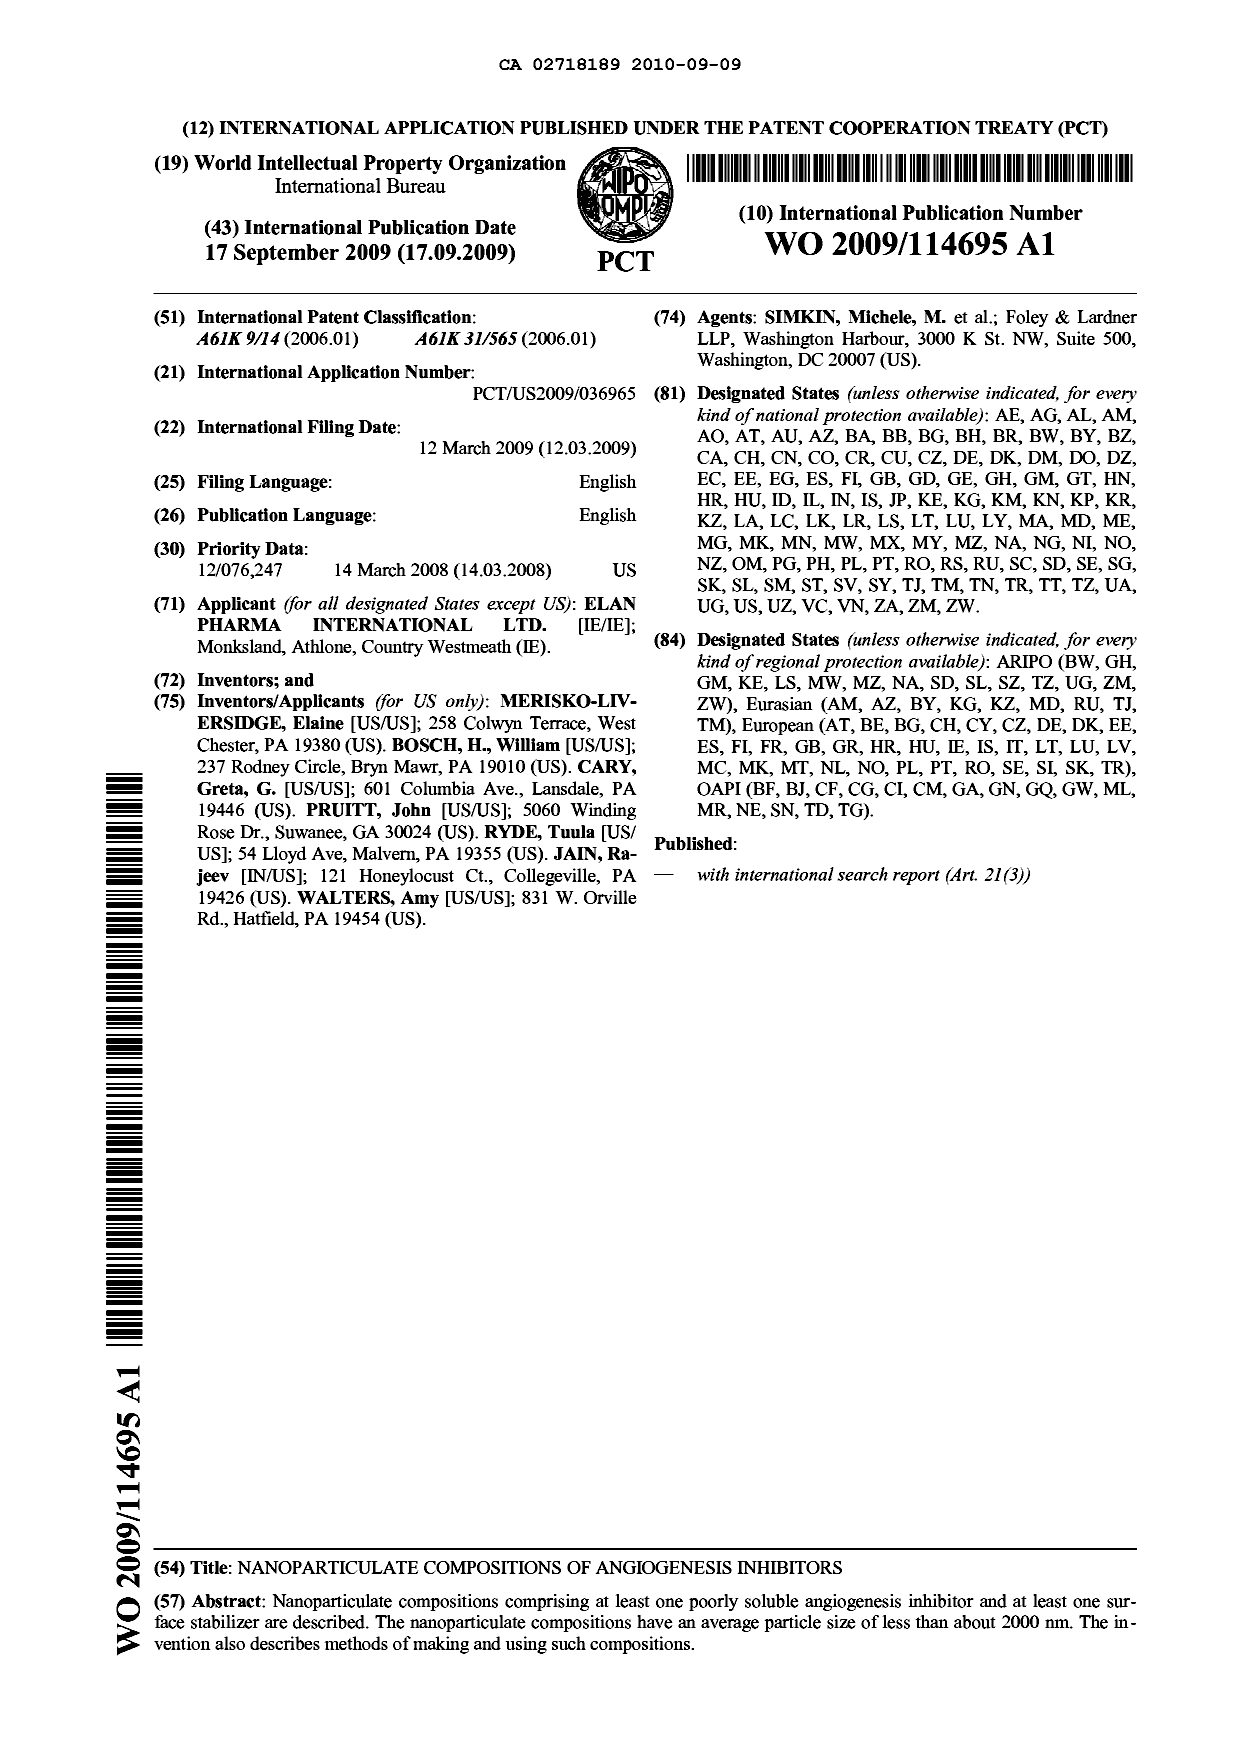 Document de brevet canadien 2718189. Abrégé 20100909. Image 1 de 1